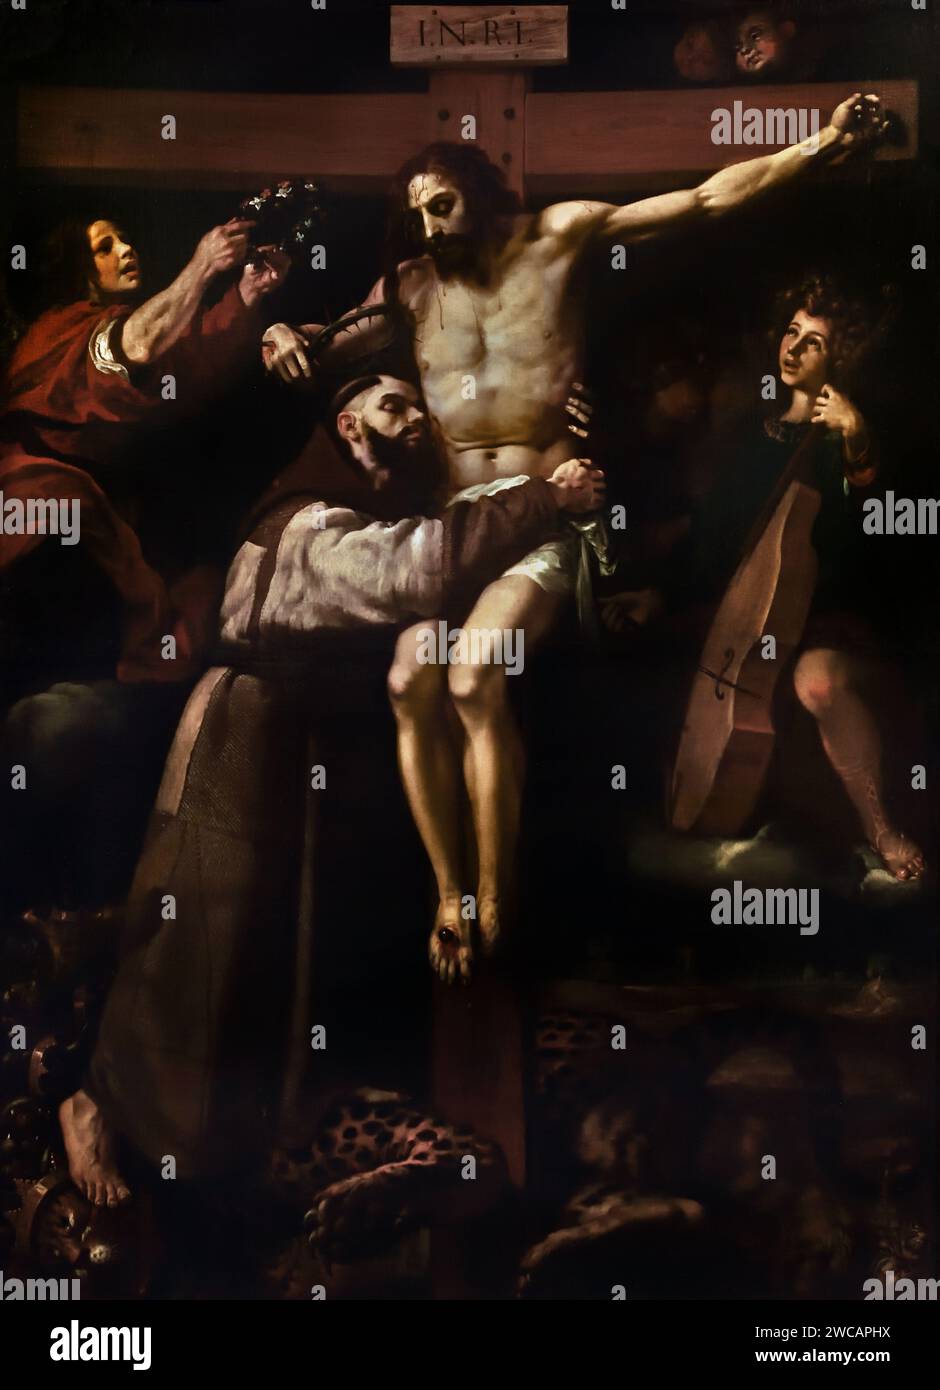 Saint François embrassant le Christ sur la Croix 1620 Francisco Ribalta 1565 - Valence 1628 Espagne Espagnol Banque D'Images